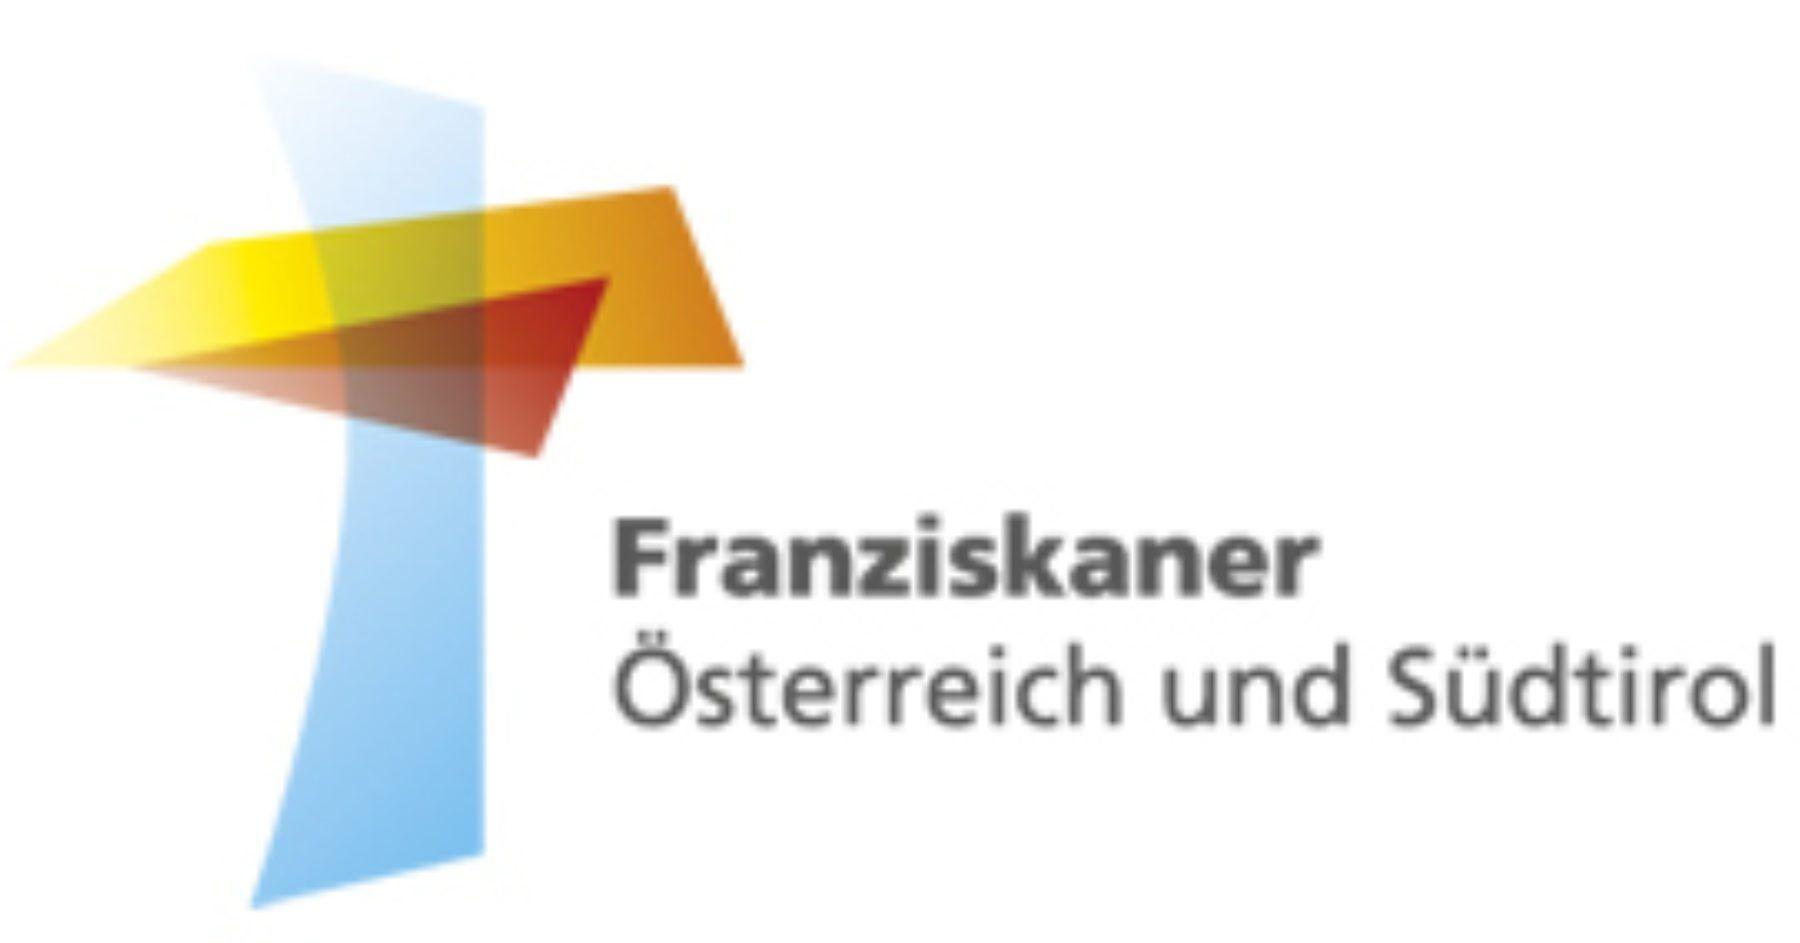 Franziskaner Logo - Franziskaner